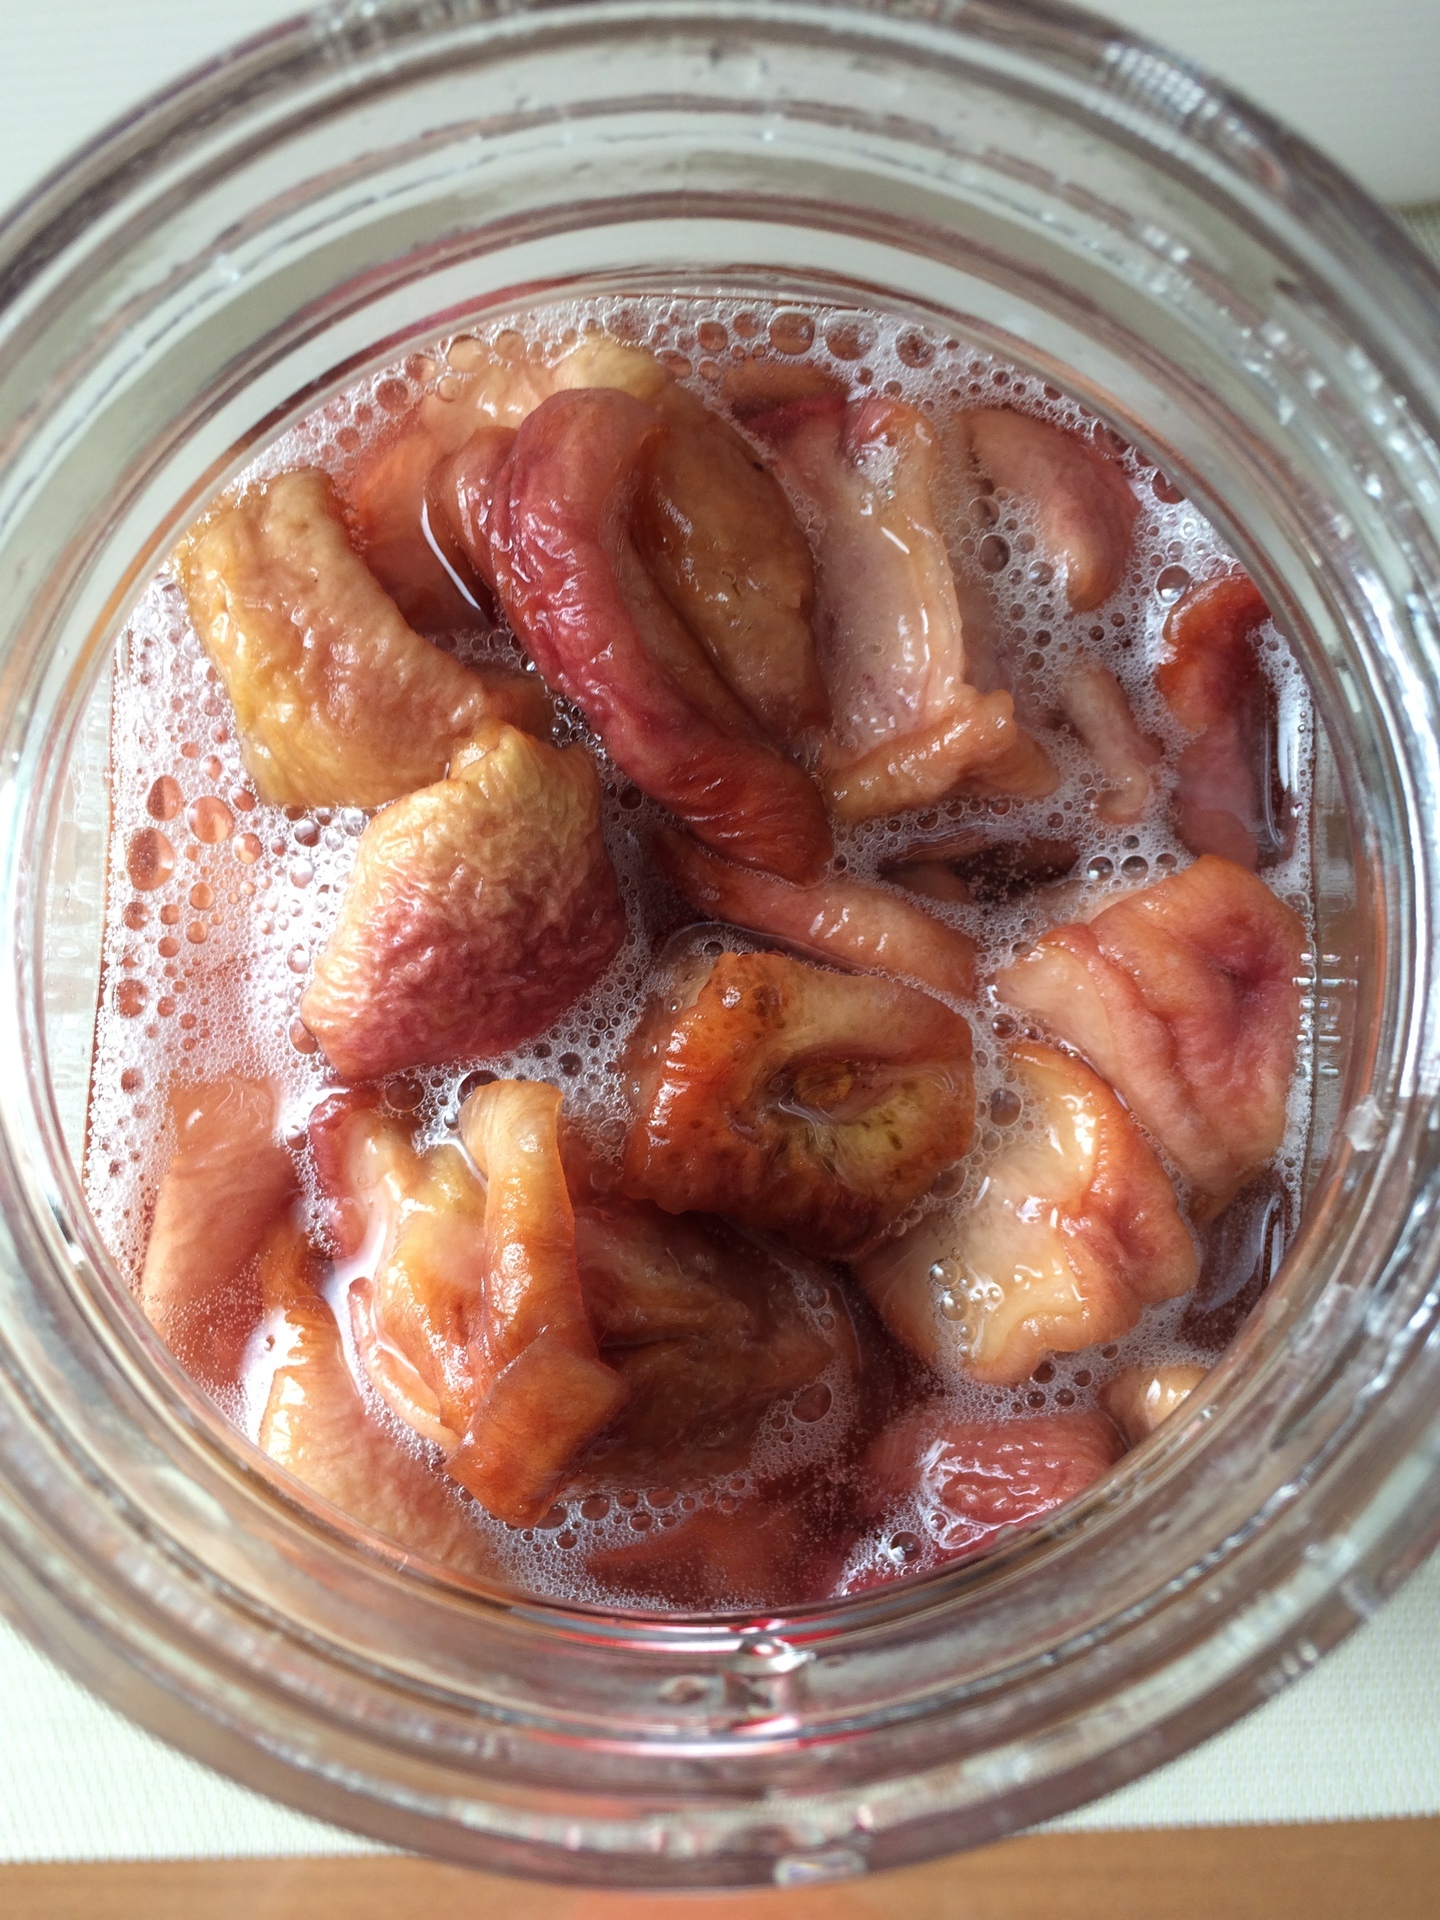 桃のシロップ さくらんぼのシロップをこす 梅シロップのような感動は得られず うさぎと発酵